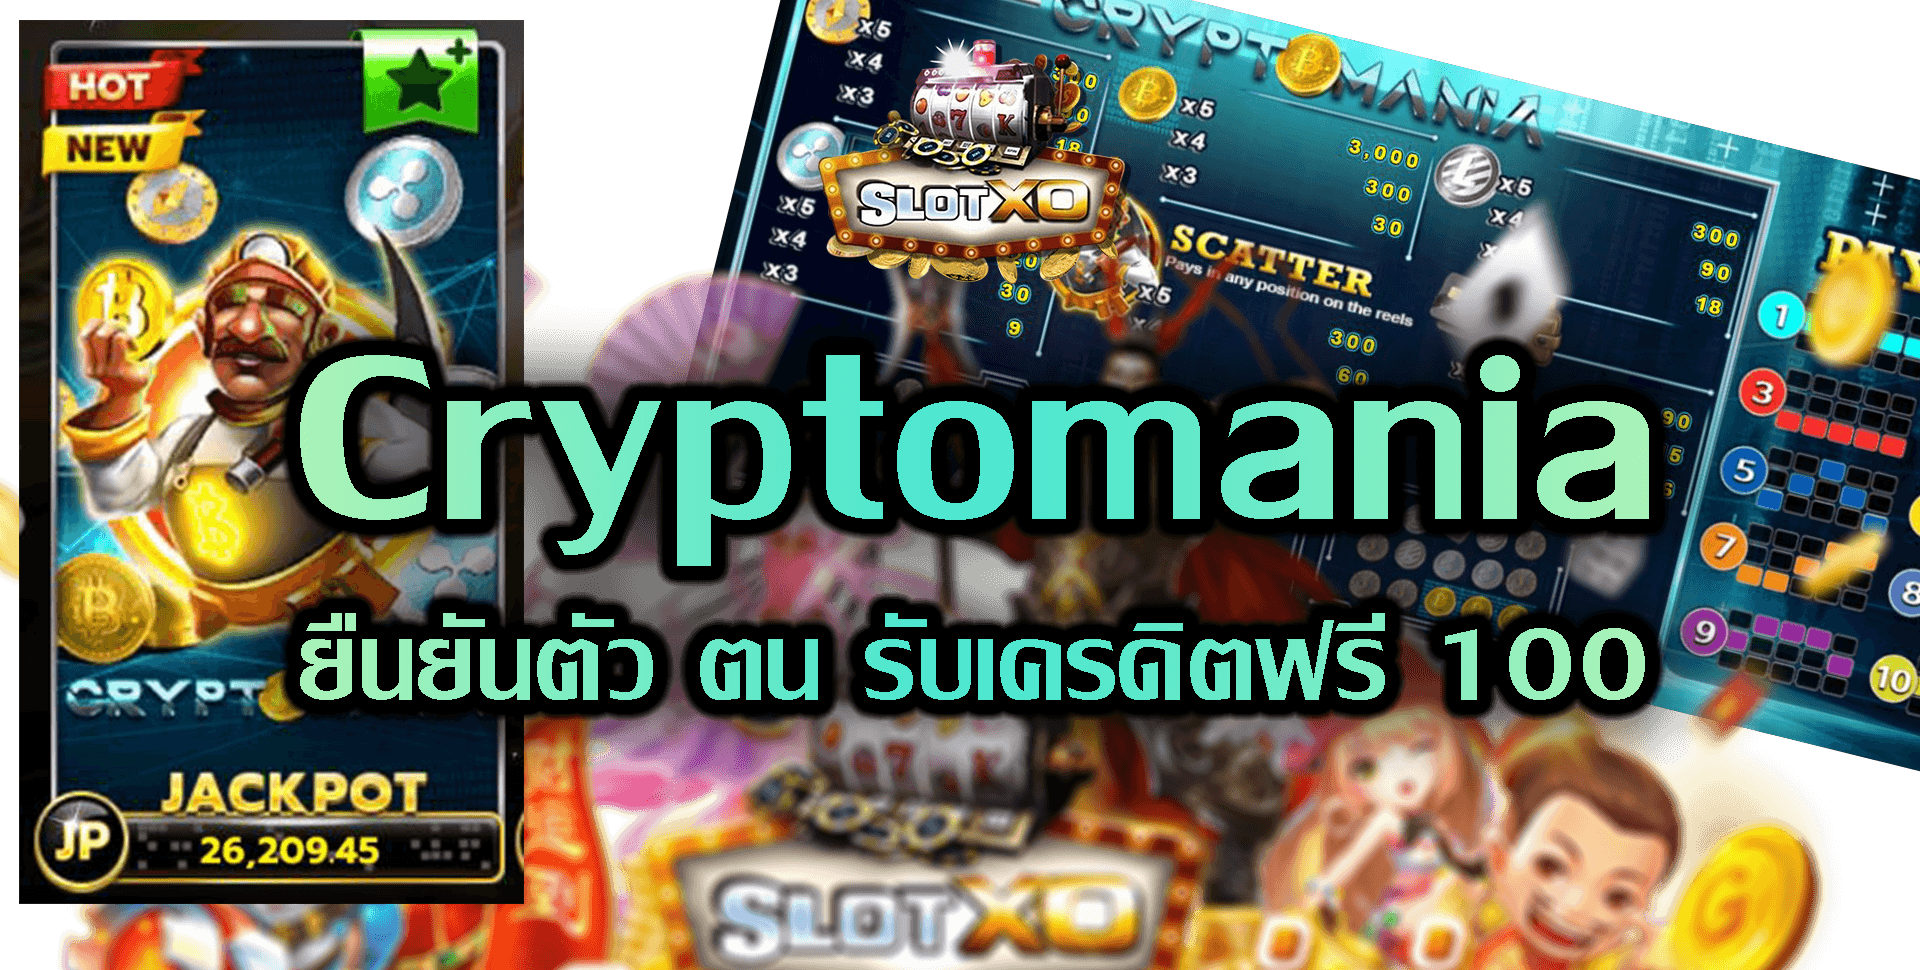 Slotxo-Slot xo-Cryptomania-5